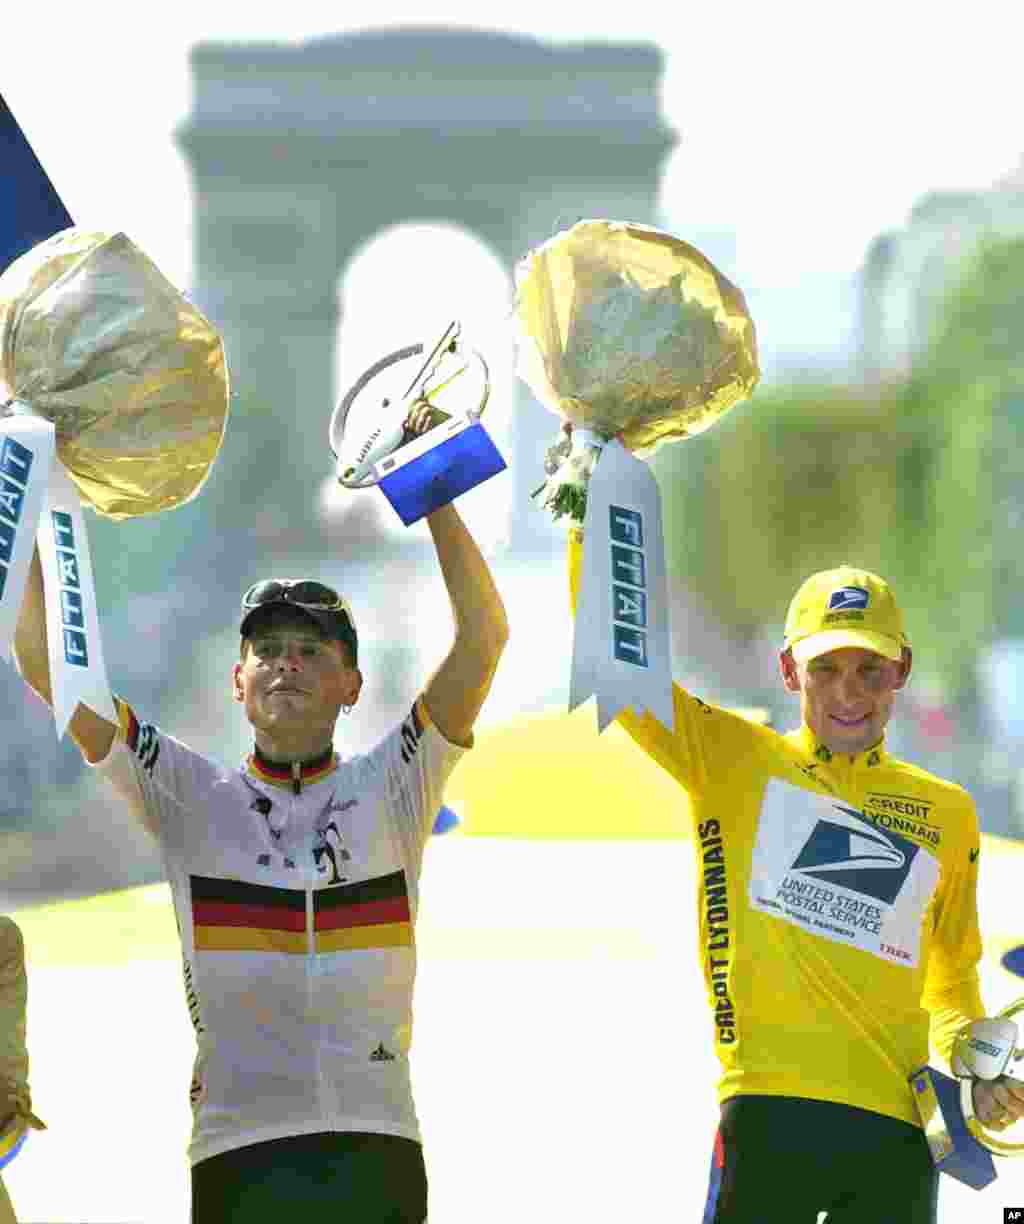 29/7/2001: Armstrong, áo vàng, trên khán đài nhận giải Vòng Đua Pháp Quốc lần thứ ba liên tiếp. Cạnh anh là người về nhì, Jan Ullrich của Đức.